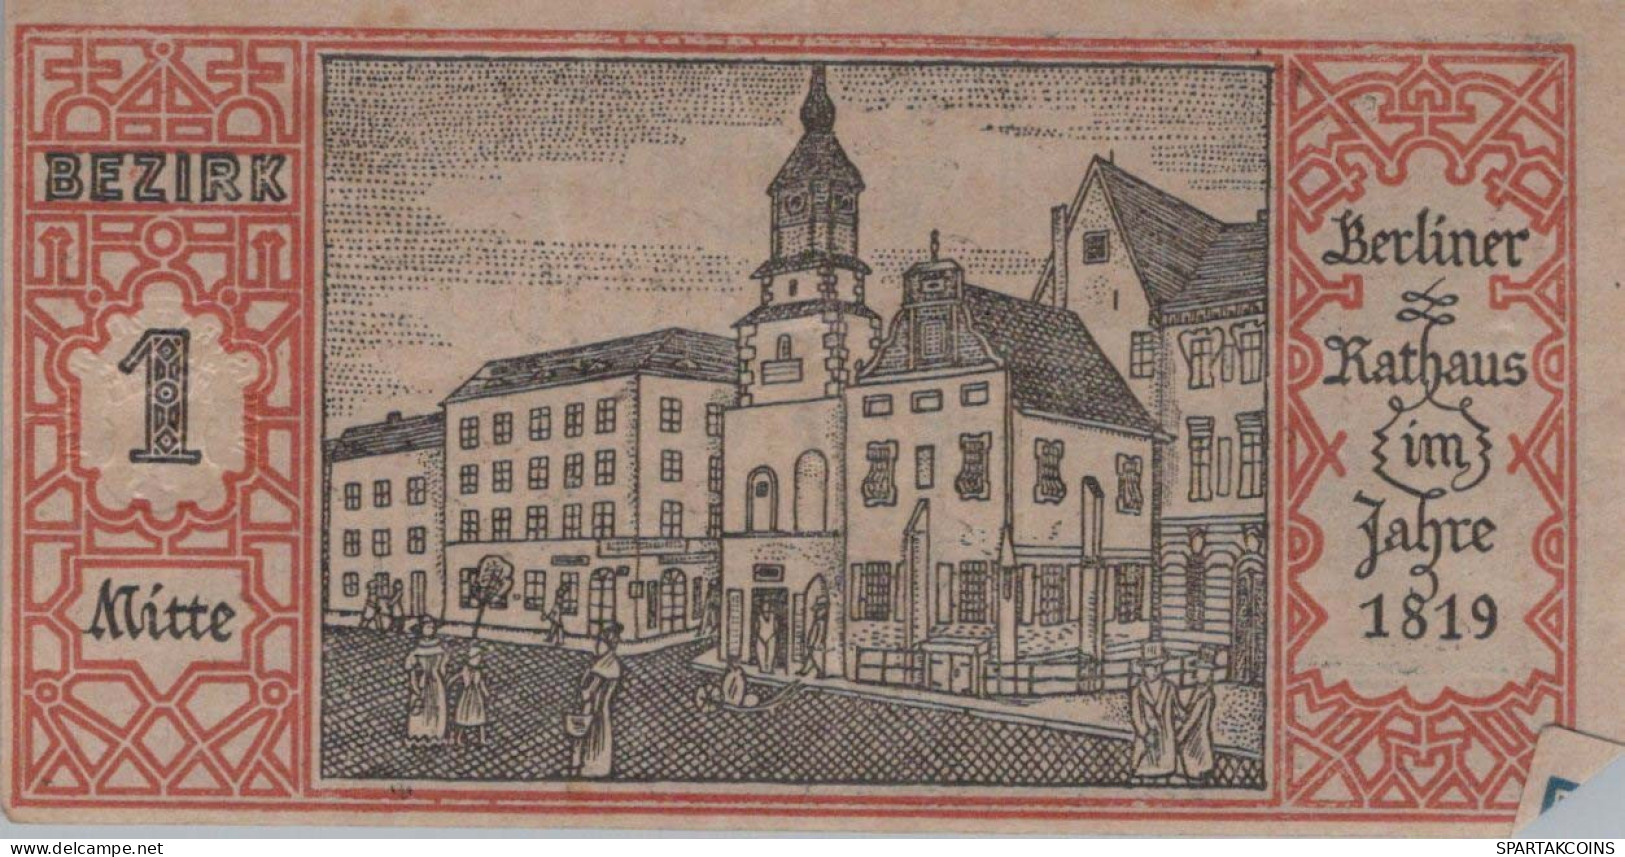 50 PFENNIG 1921 Stadt BERLIN DEUTSCHLAND Notgeld Banknote #PG387 - [11] Emisiones Locales